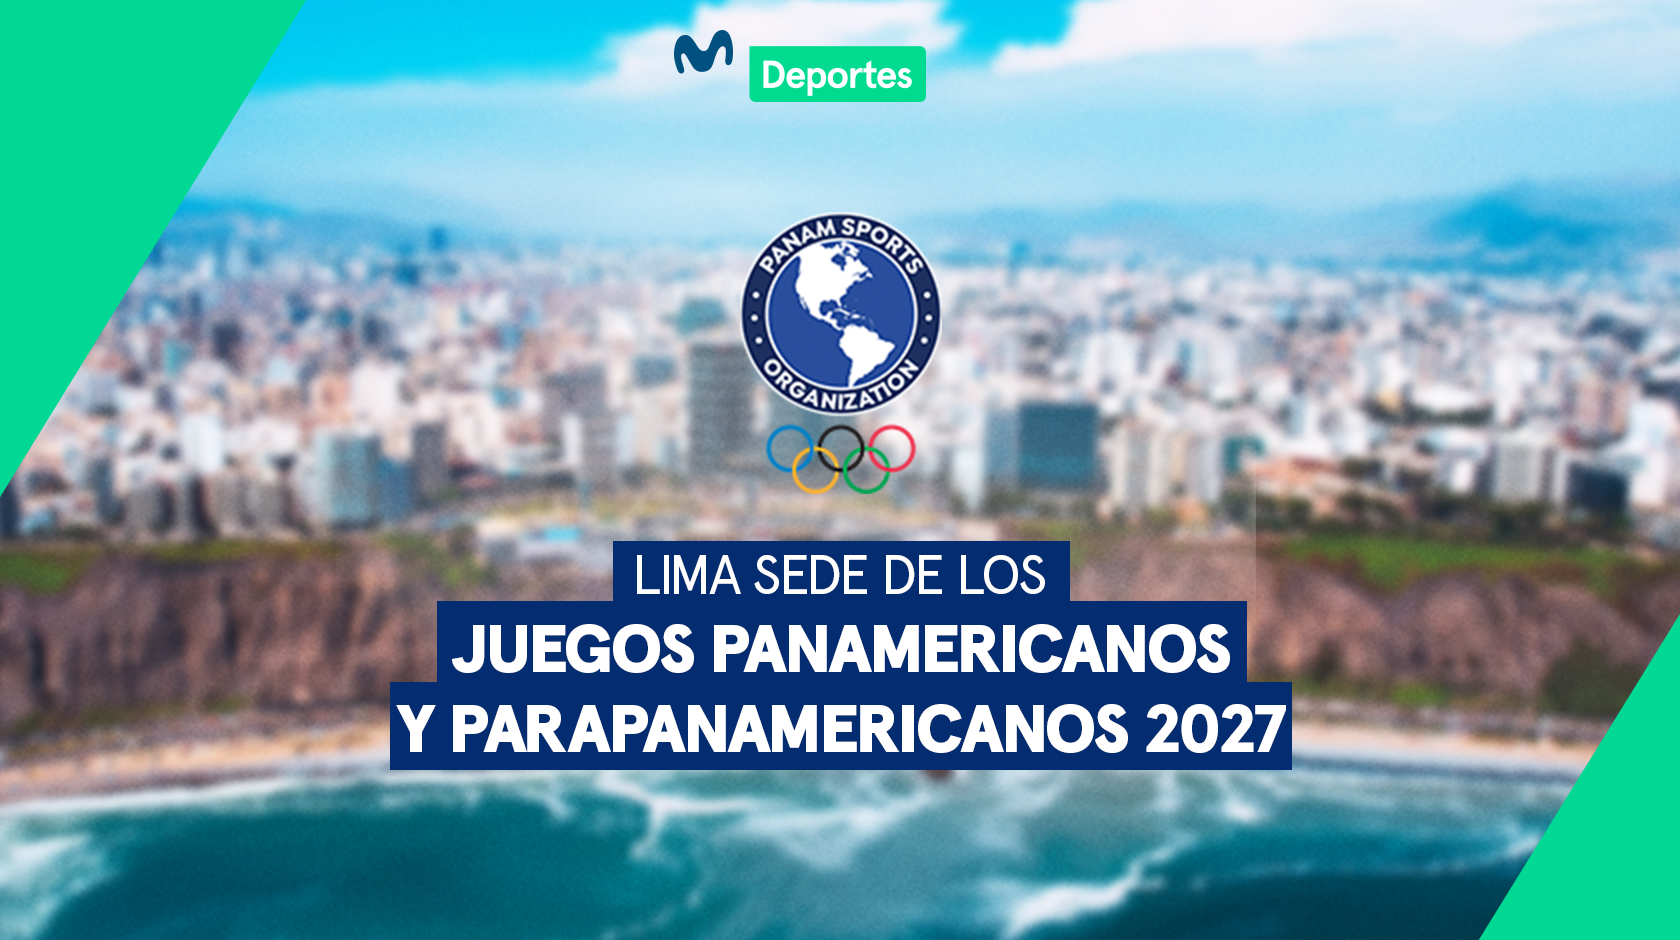 Lima es elegida para ser sede de los Juegos Panamericanos y Parapanamericanos 2027